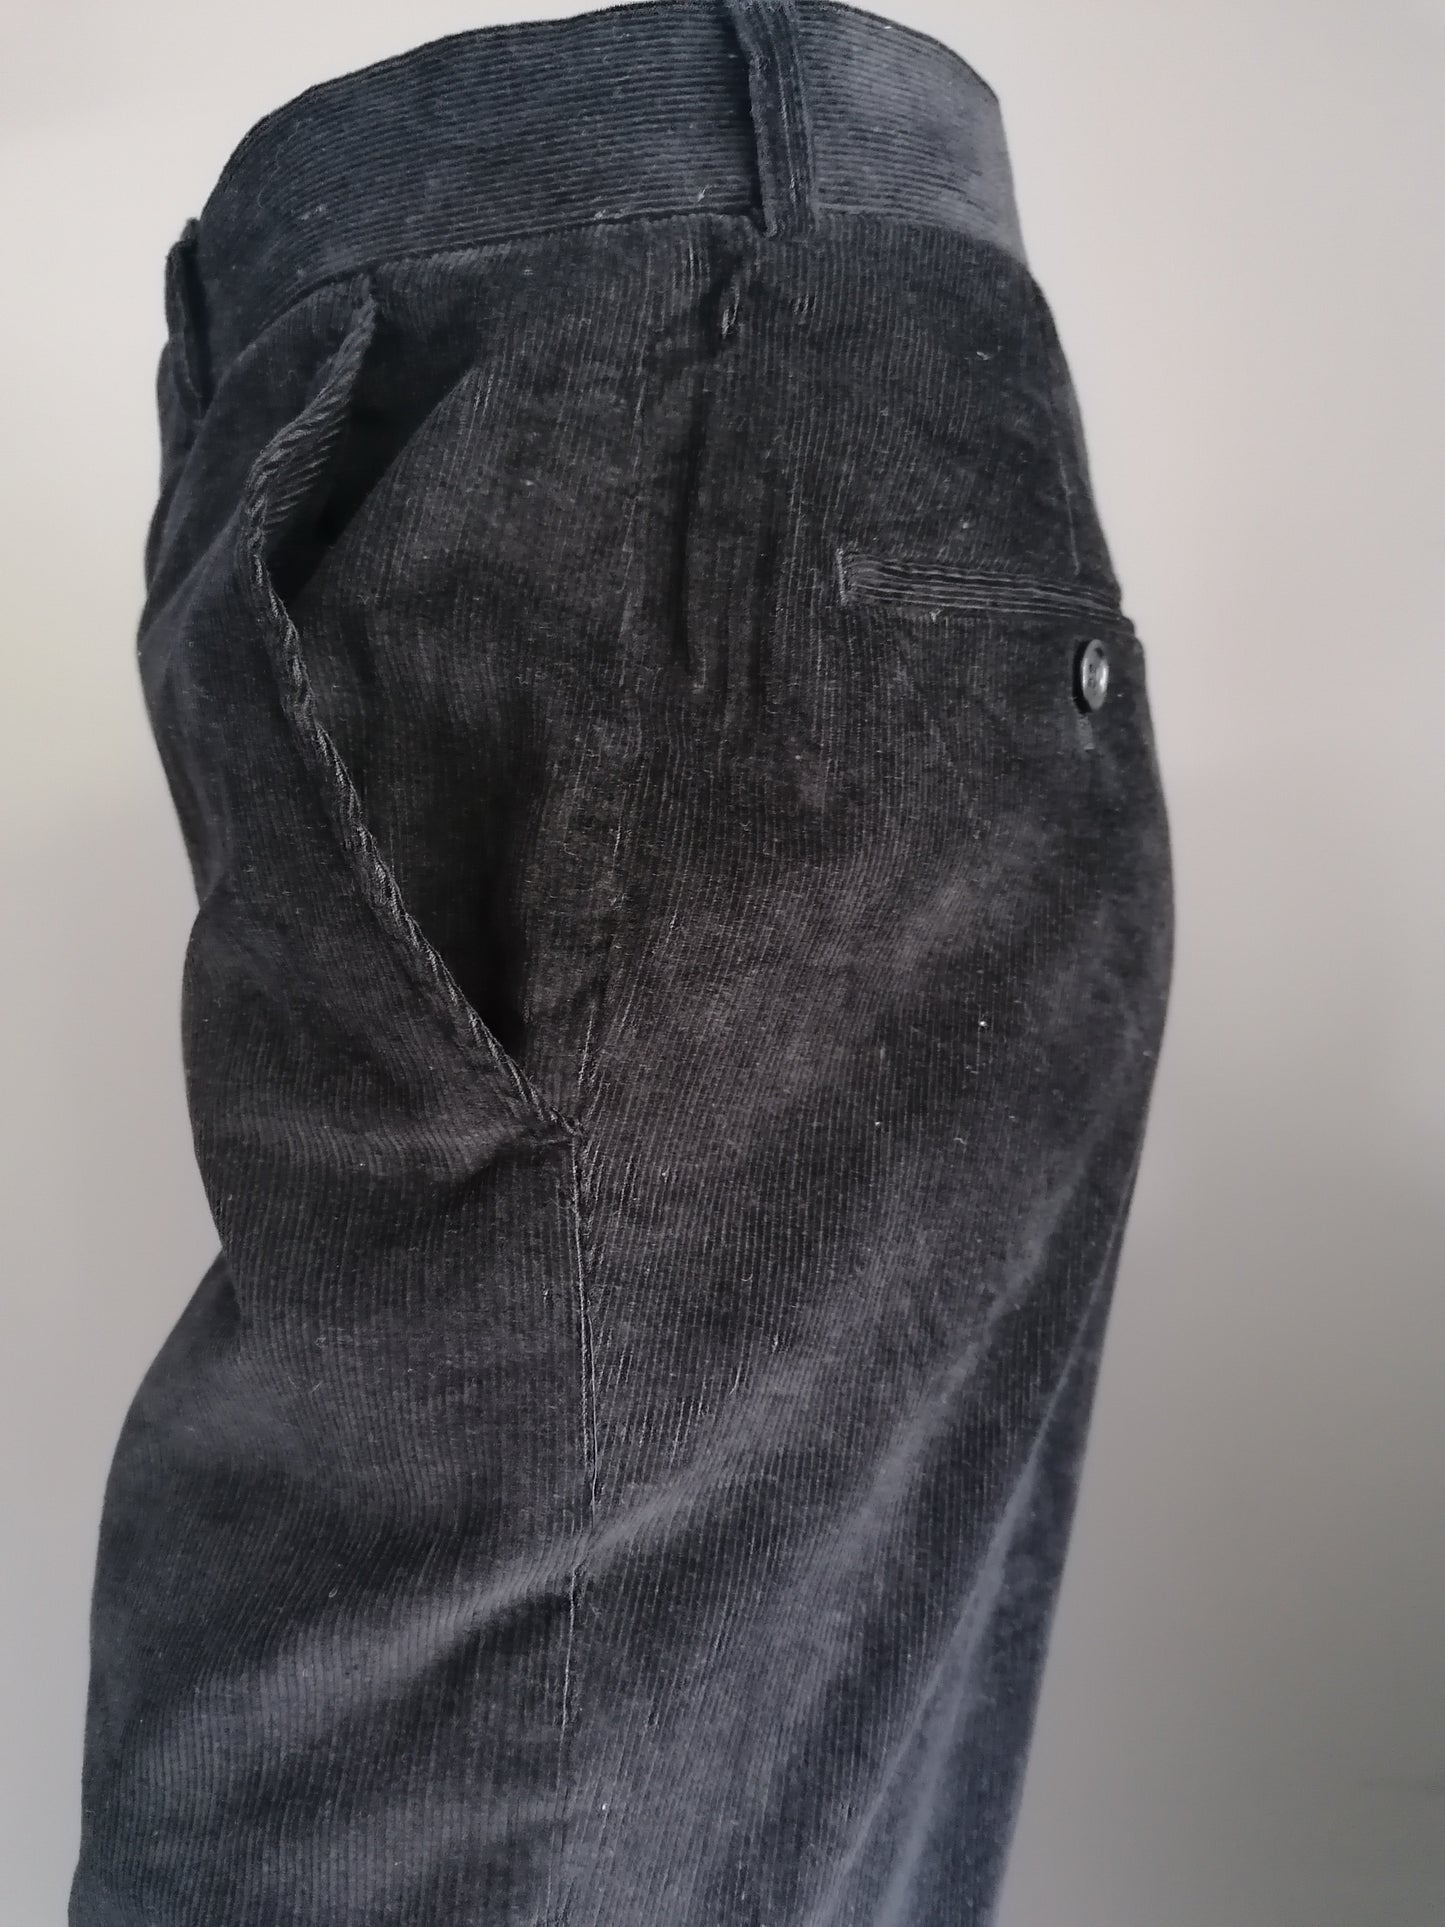 Costume de côtes de pierres. Belle côte. Couleur noire. Taille 48 (veste) et taille 46 (pantalon)